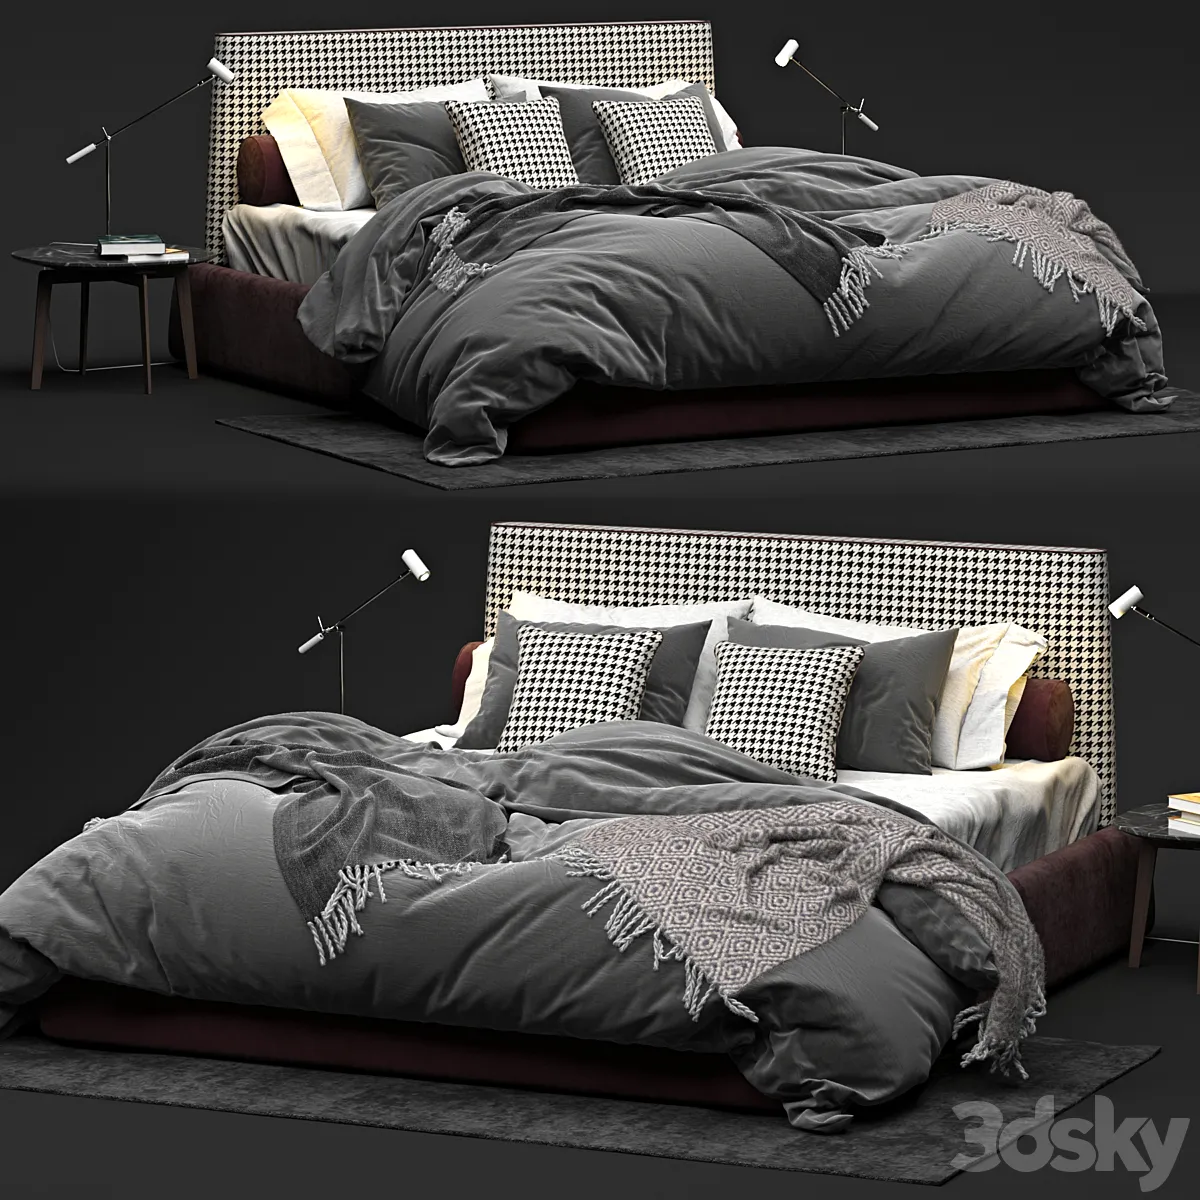 مدل سه بعدی تخت خواب تری دی مکس + ویری Bed Twils Byron